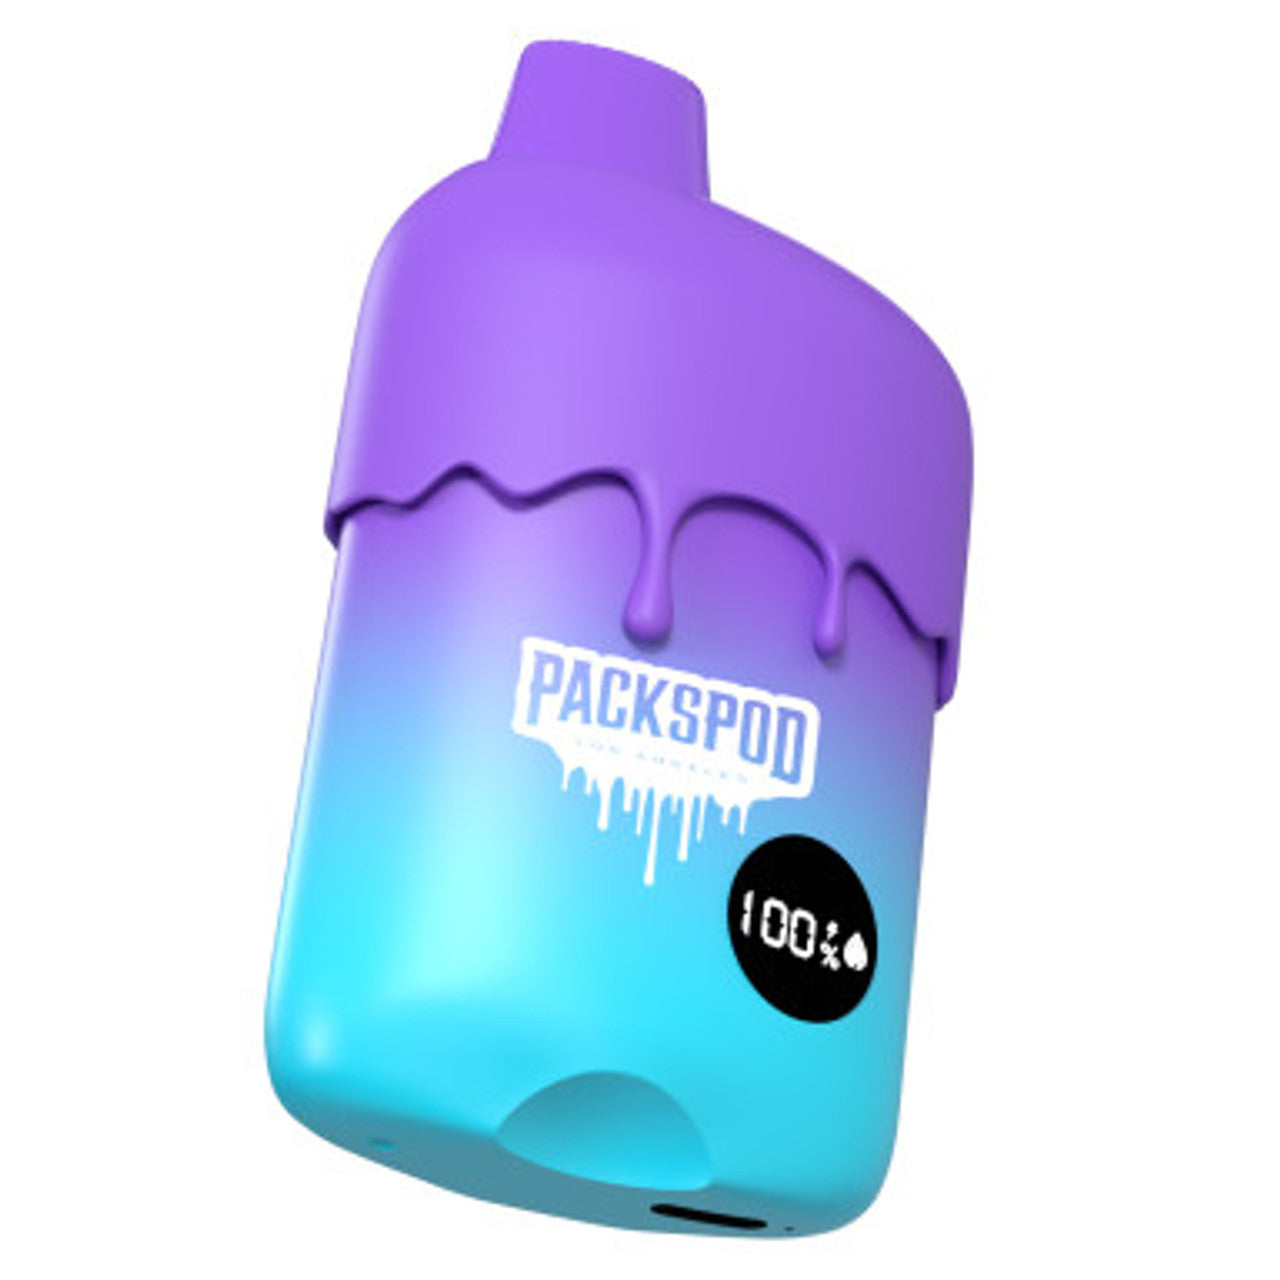 Packspod 12,000 Puffs Disposable Vape 5% 18mL Best Flavor  Blowpop